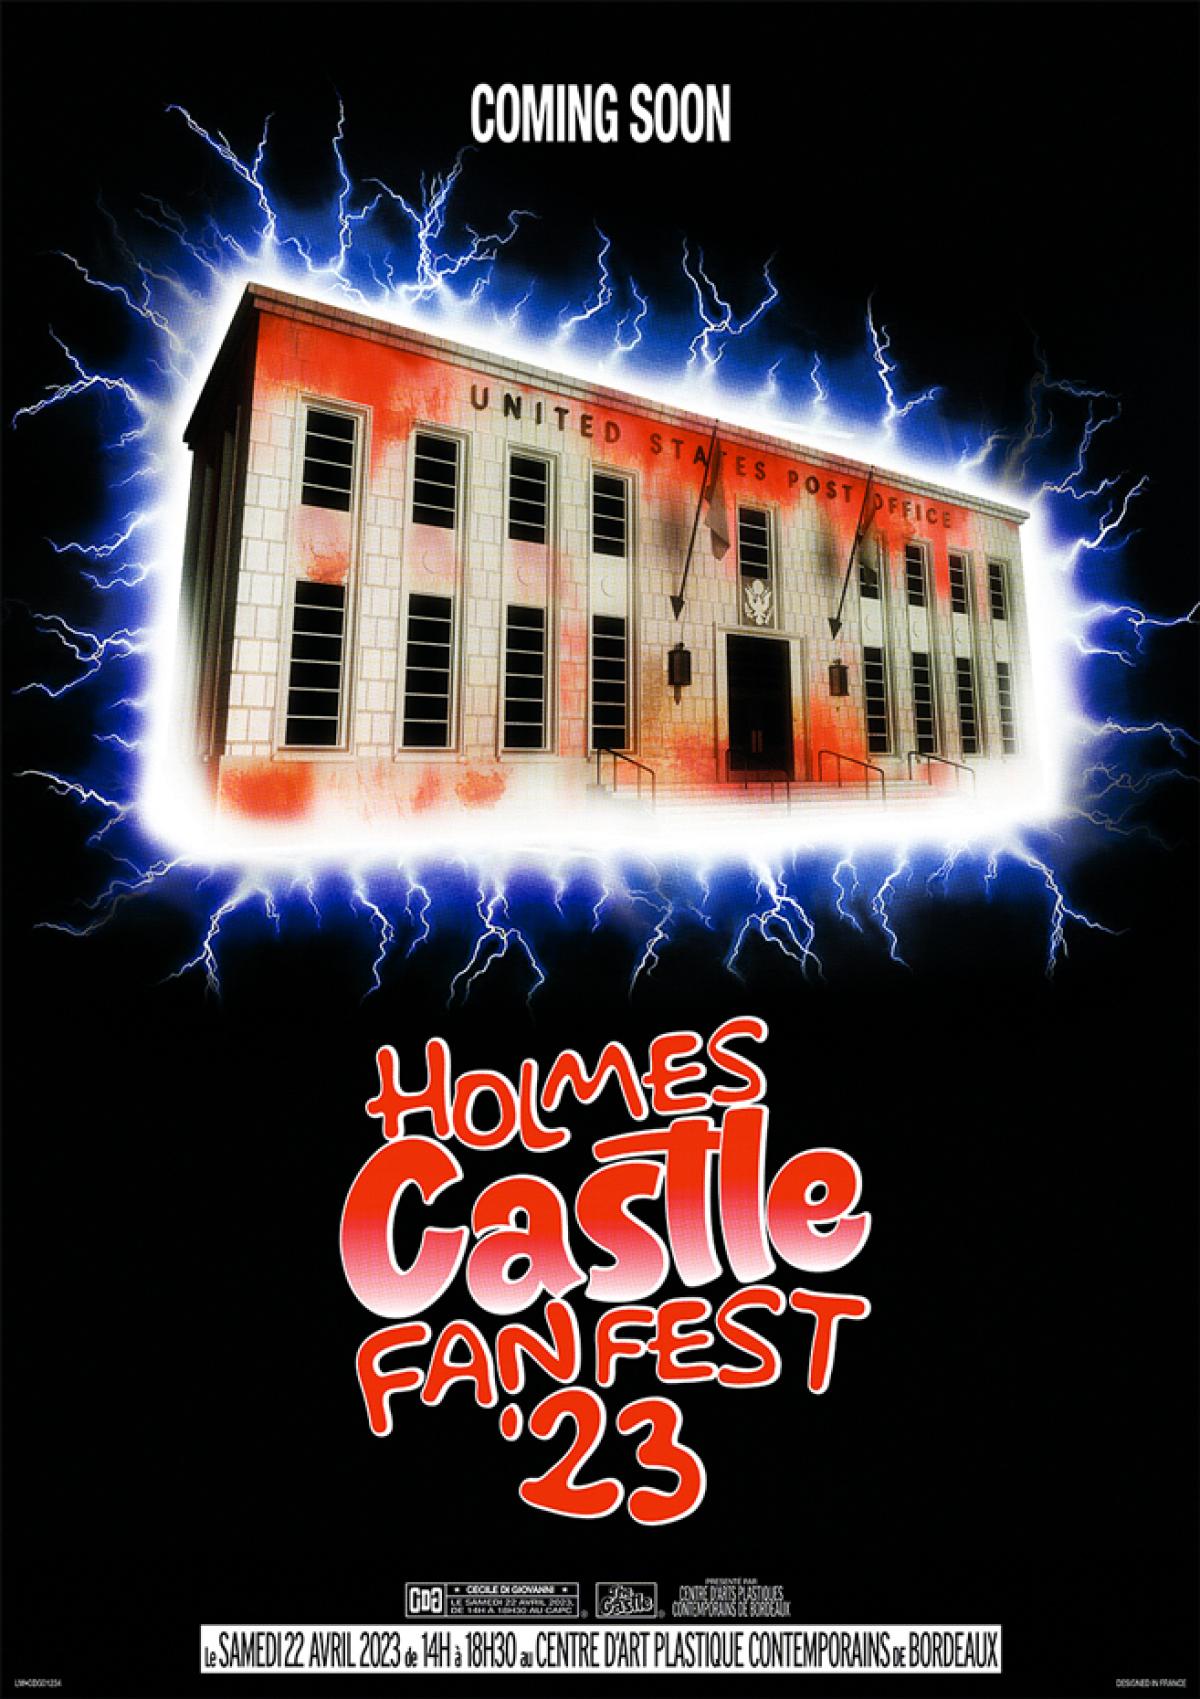 Une affiche, sur un fong noir, En haut ils est écrit "Coming soon". Dessous la façade d'un bâtiment entouré d'un halo blanc et bleu d'où s'échappe des éclairs et avec écrit sur l'immeuble "United States Post Office". Dessous en trouve la mention "Holmes Castle Fan Fest'23"